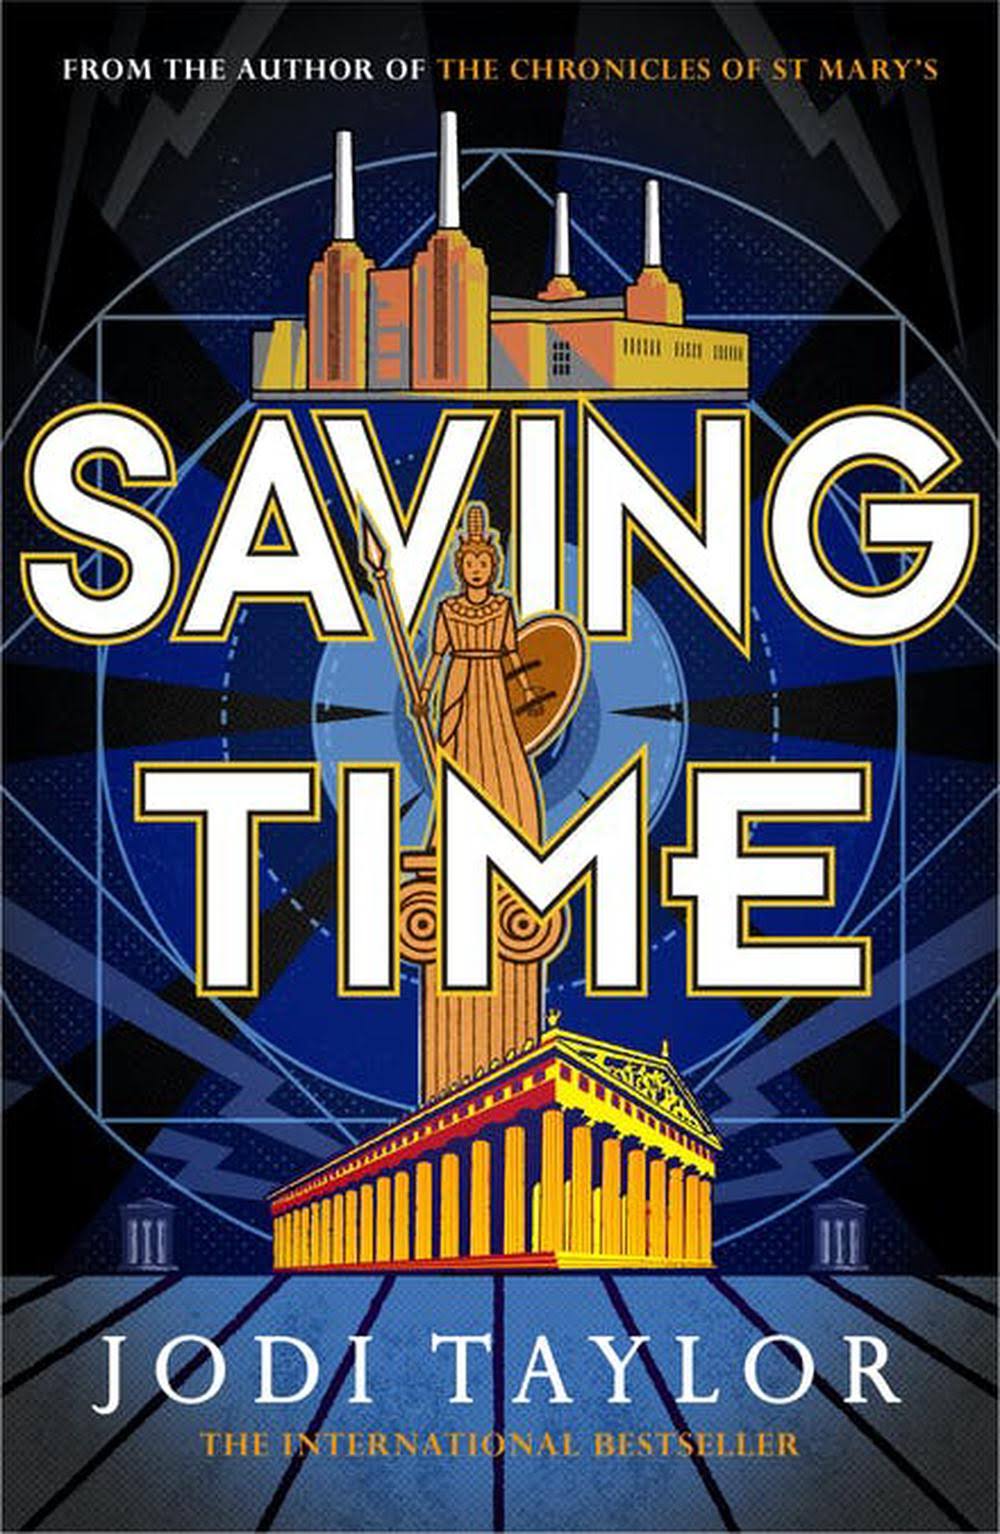 Saving Time by Jodi Taylor